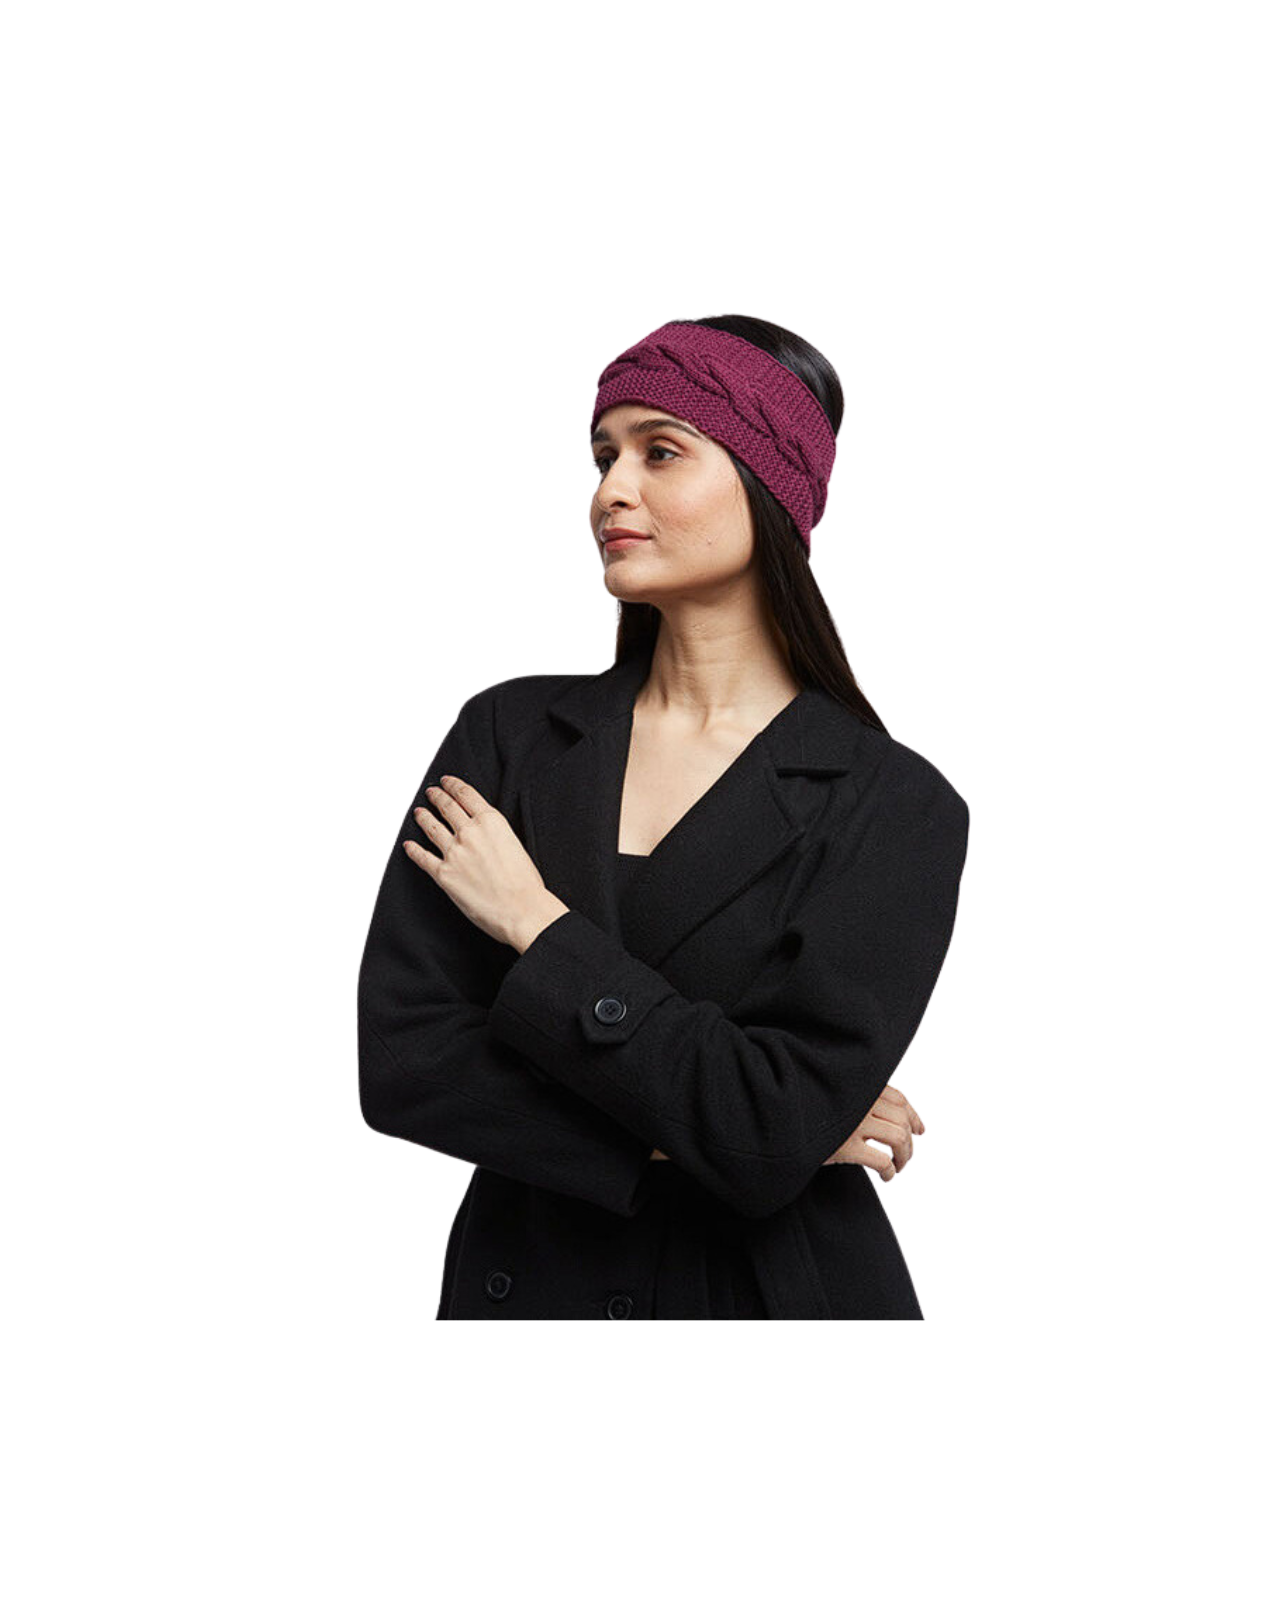 Merino Wool Headband For Women